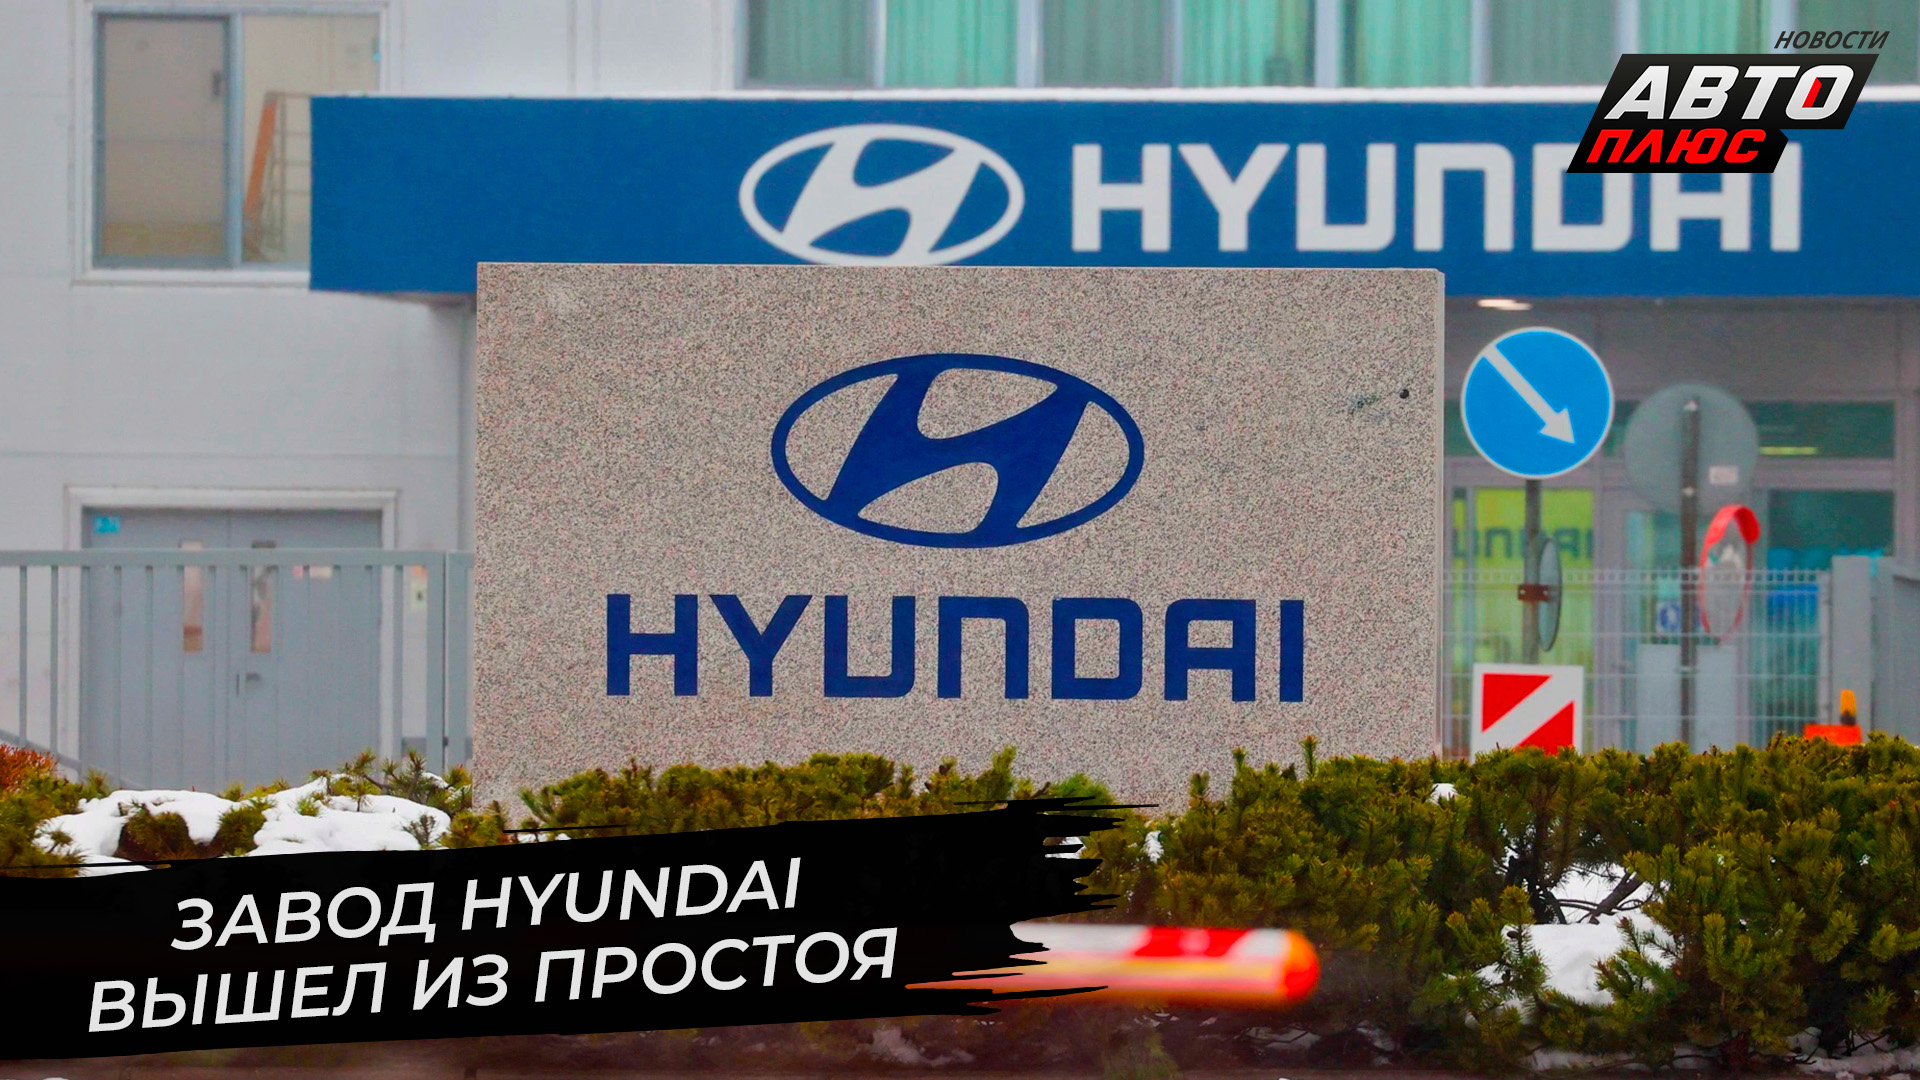 Завод Hyundai вышел из простоя ? Новости с колёс №2781